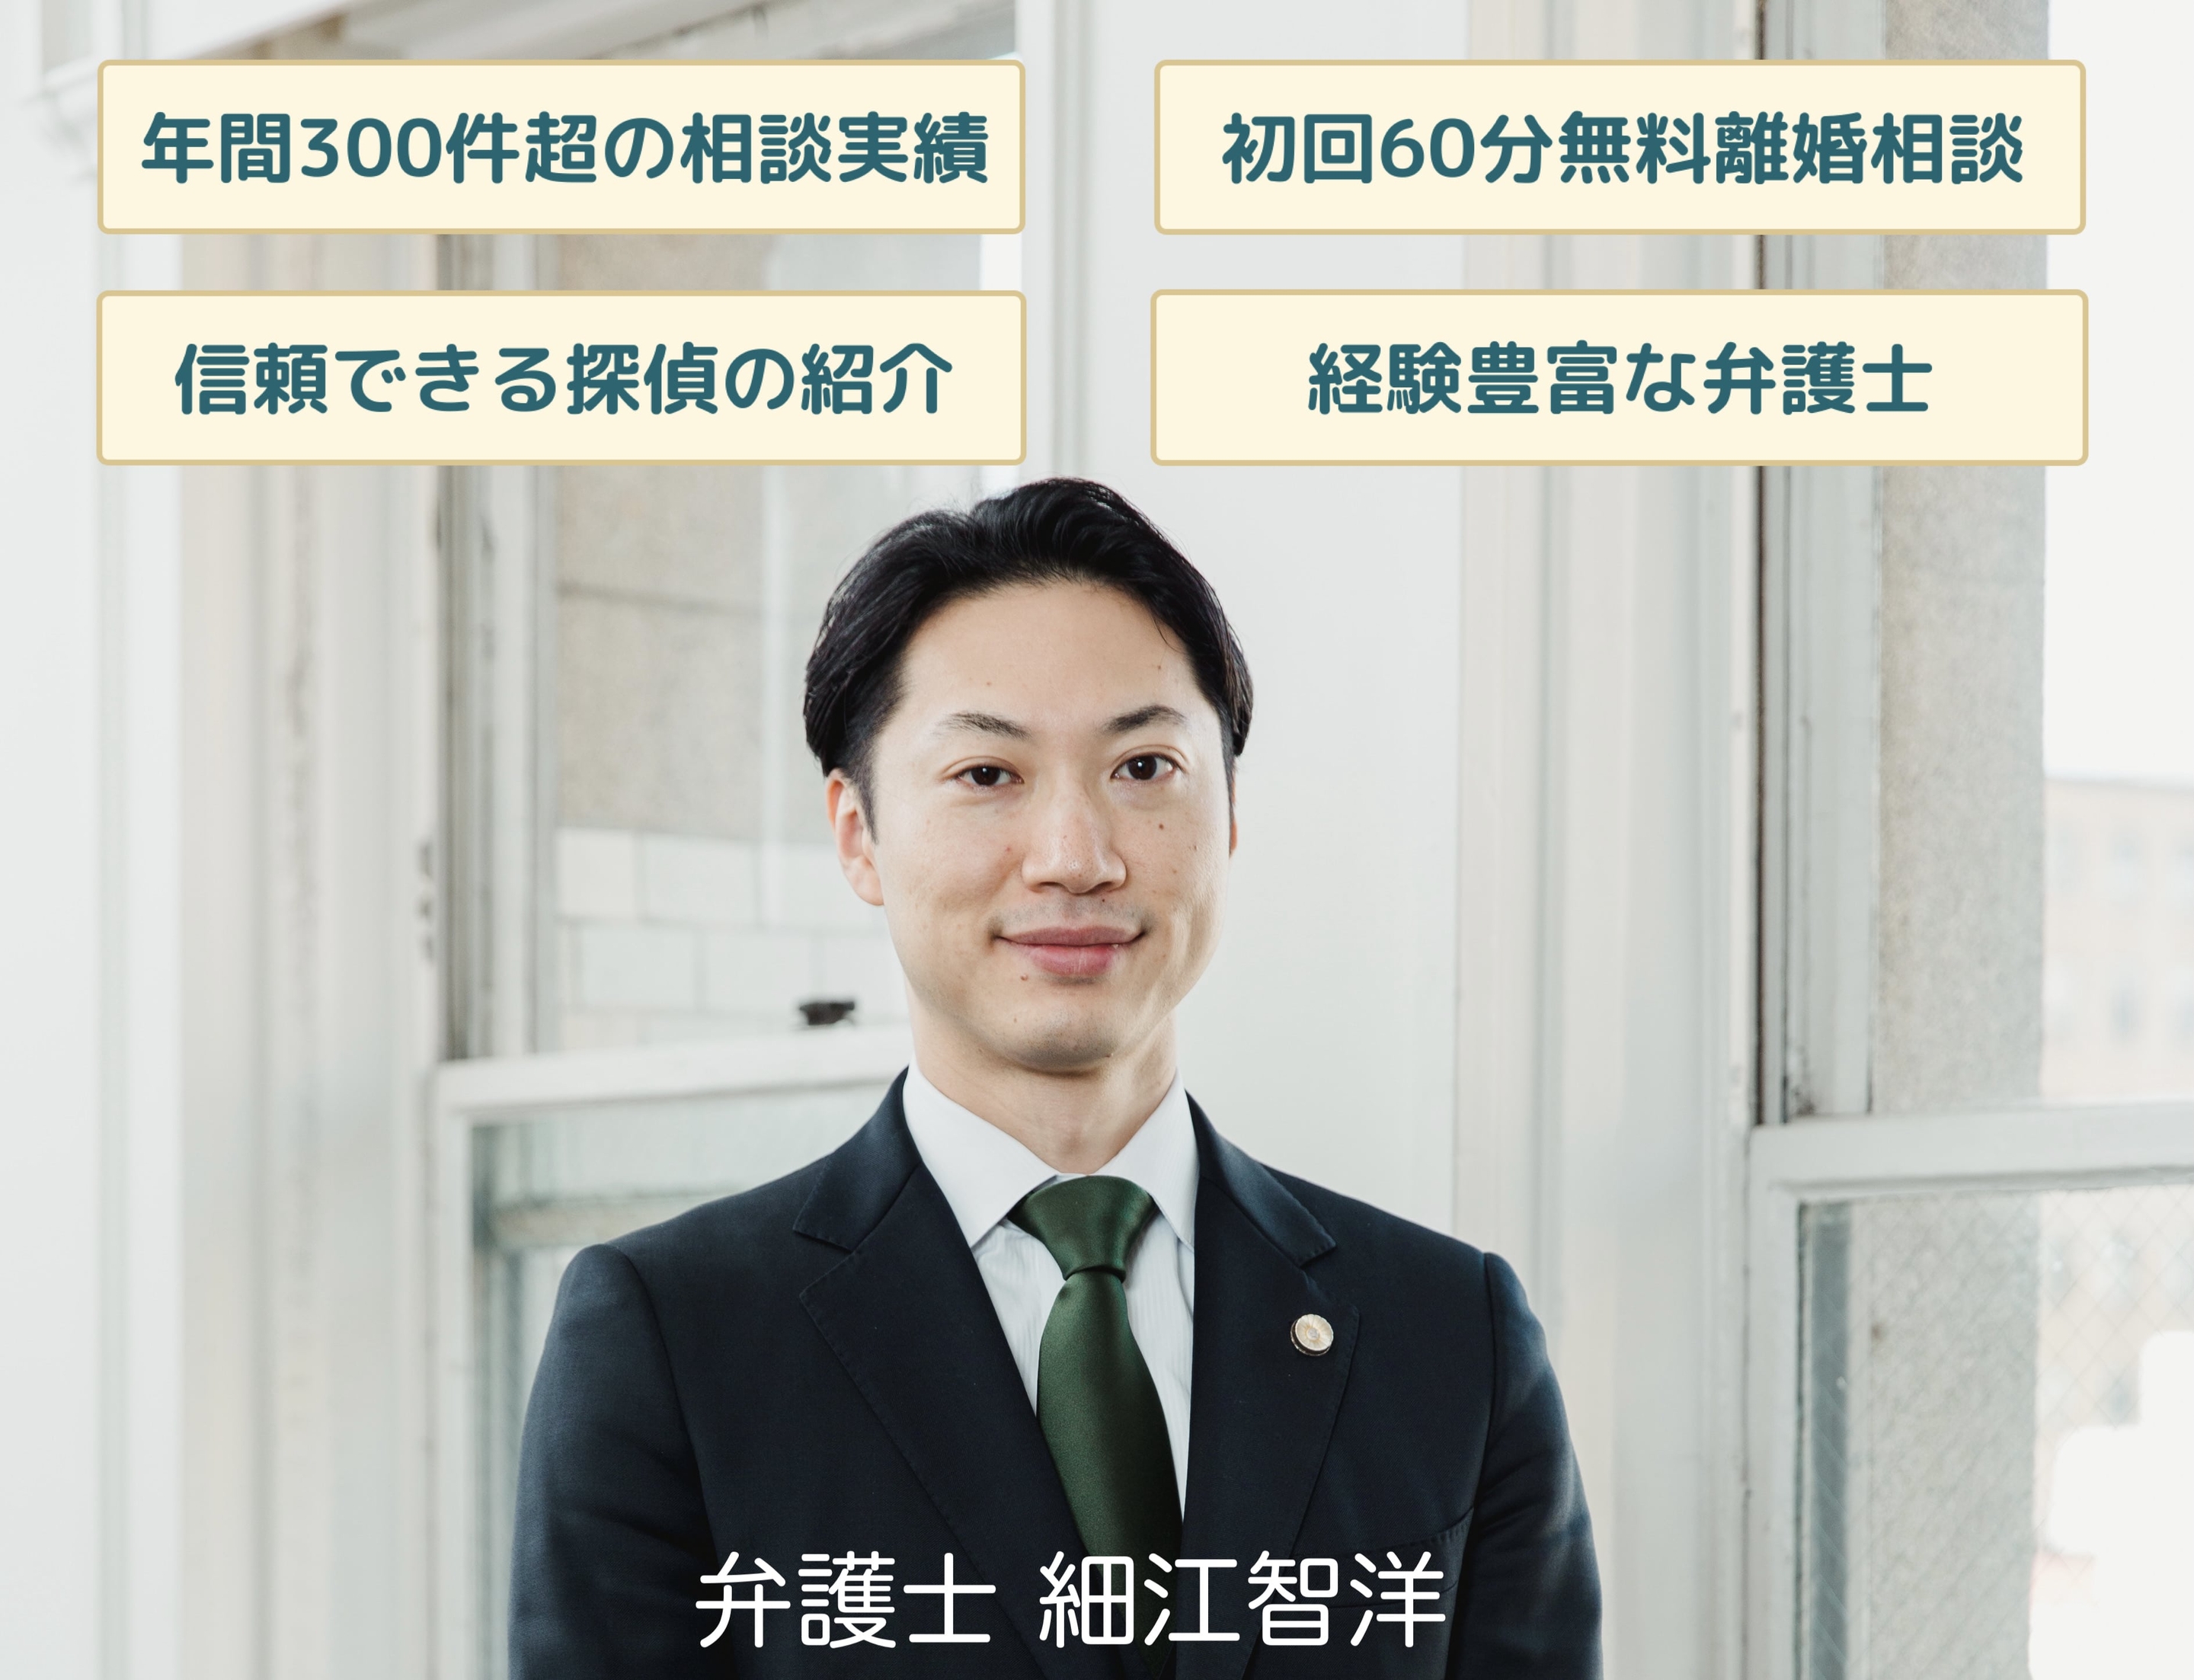 モラハラ 横浜 離婚 弁護士 横浜の離婚問題に精通する弁護士チーム 細江智洋